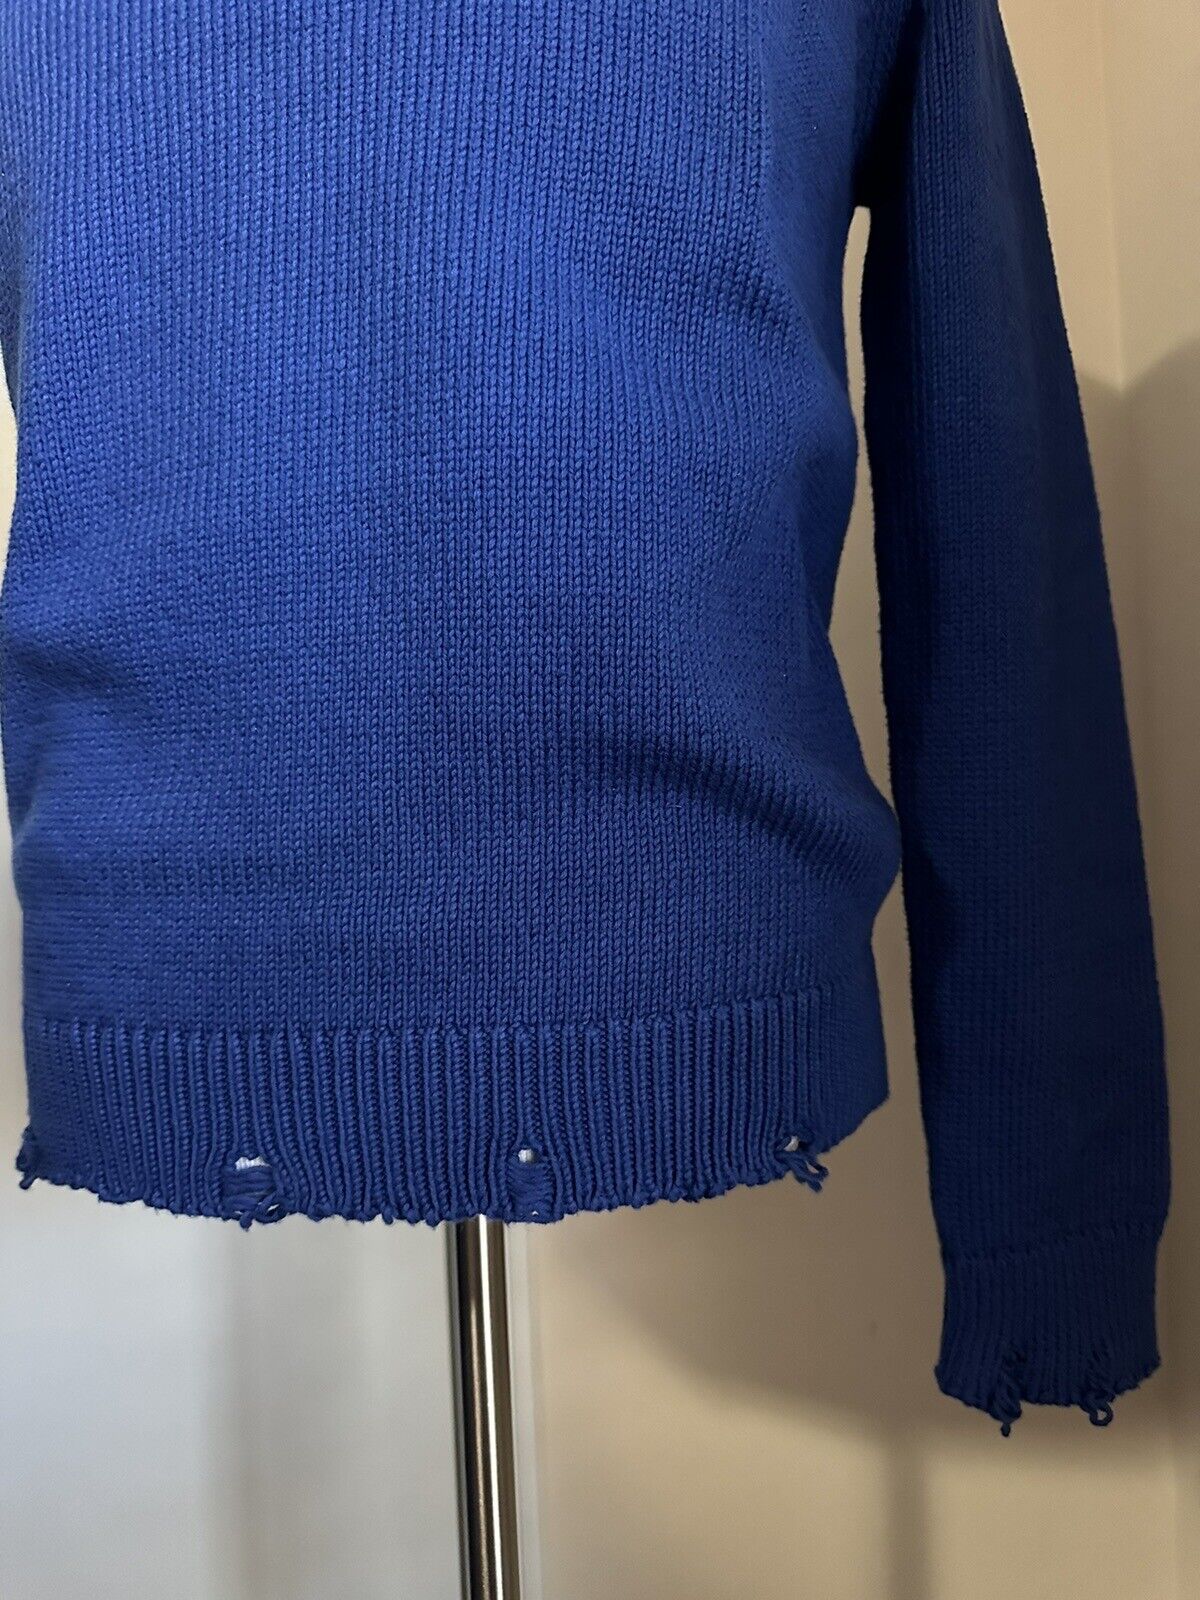 NWT $890 Мужской свитер с круглым вырезом Saint Laurent синий размер L Италия